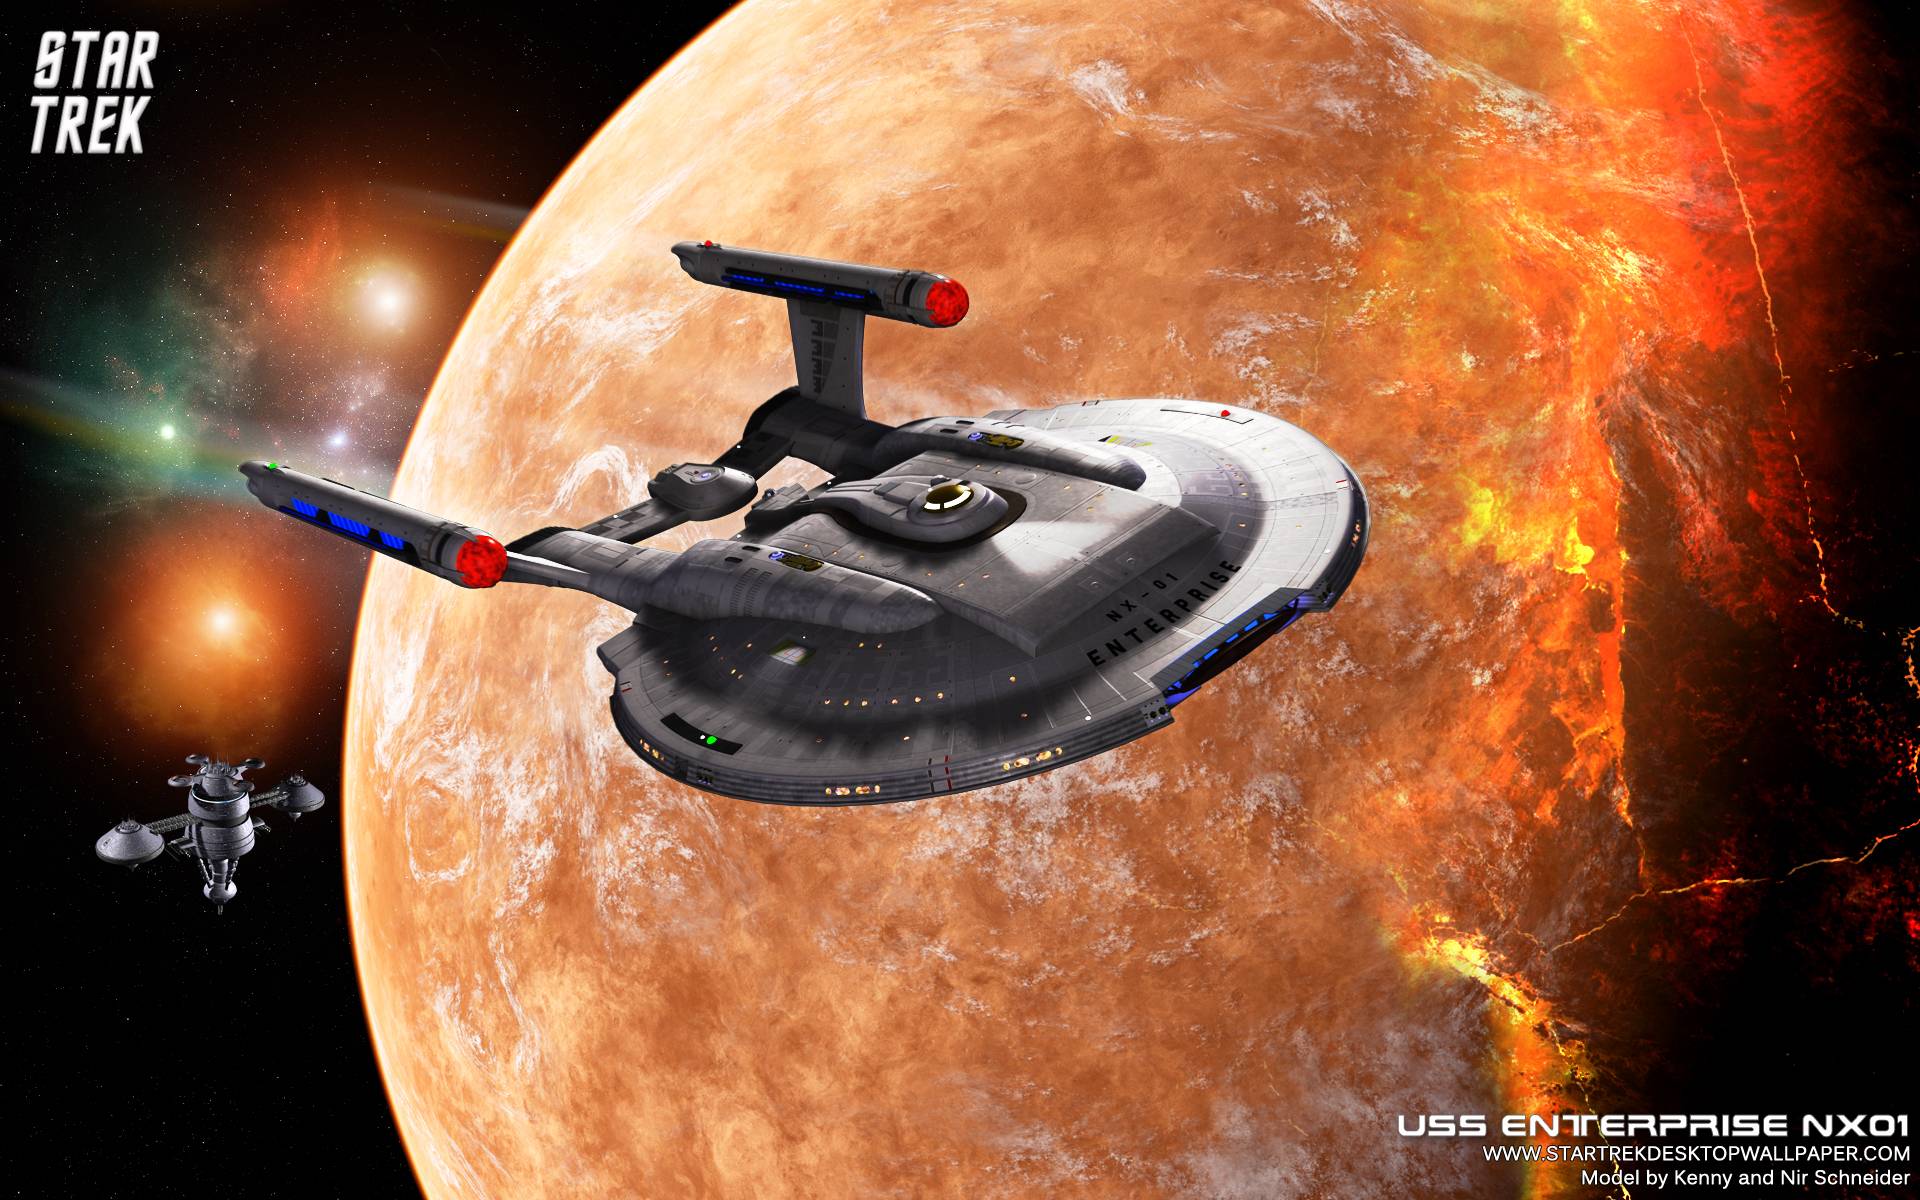 Star Trek Enterprise NX01 On Burning Planet, free Star Trek